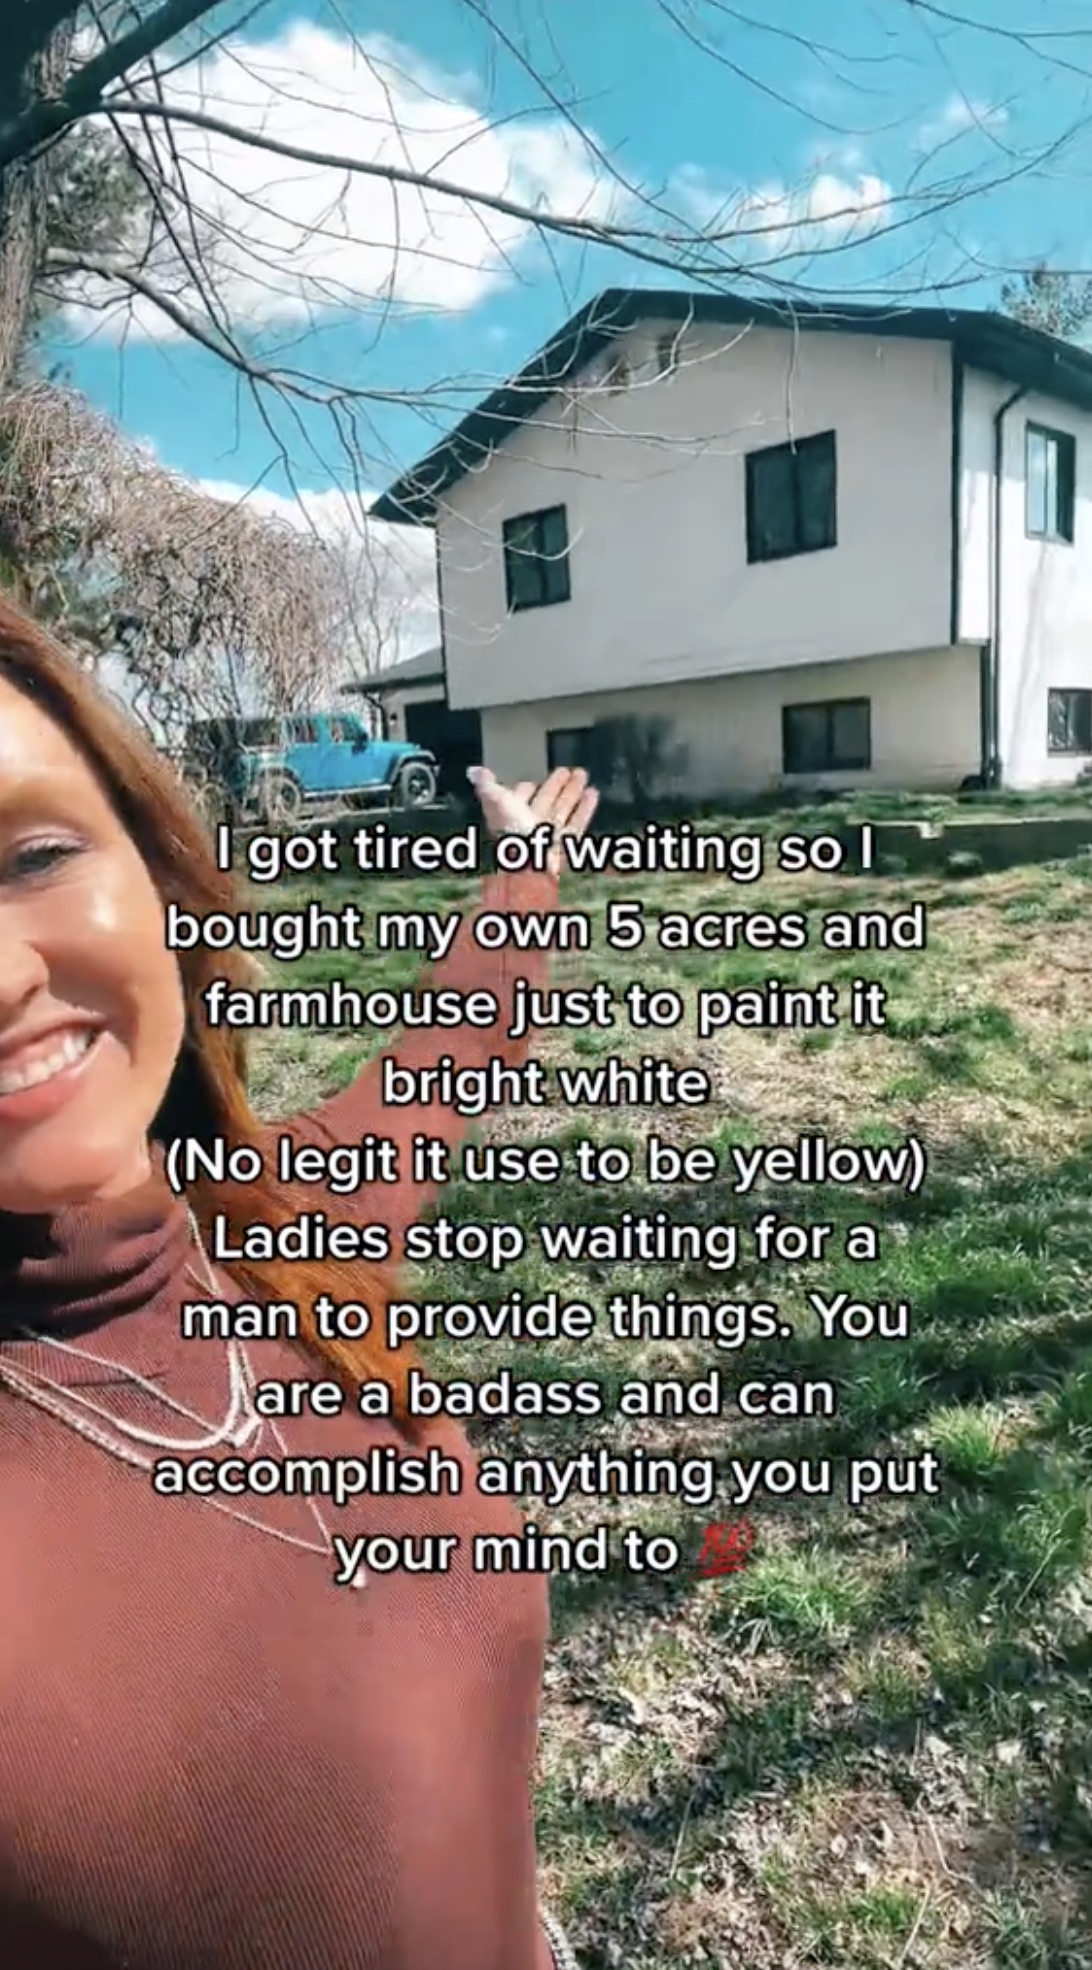 Sie enthüllte ihr neues, frisch gestrichenes Bauernhaus